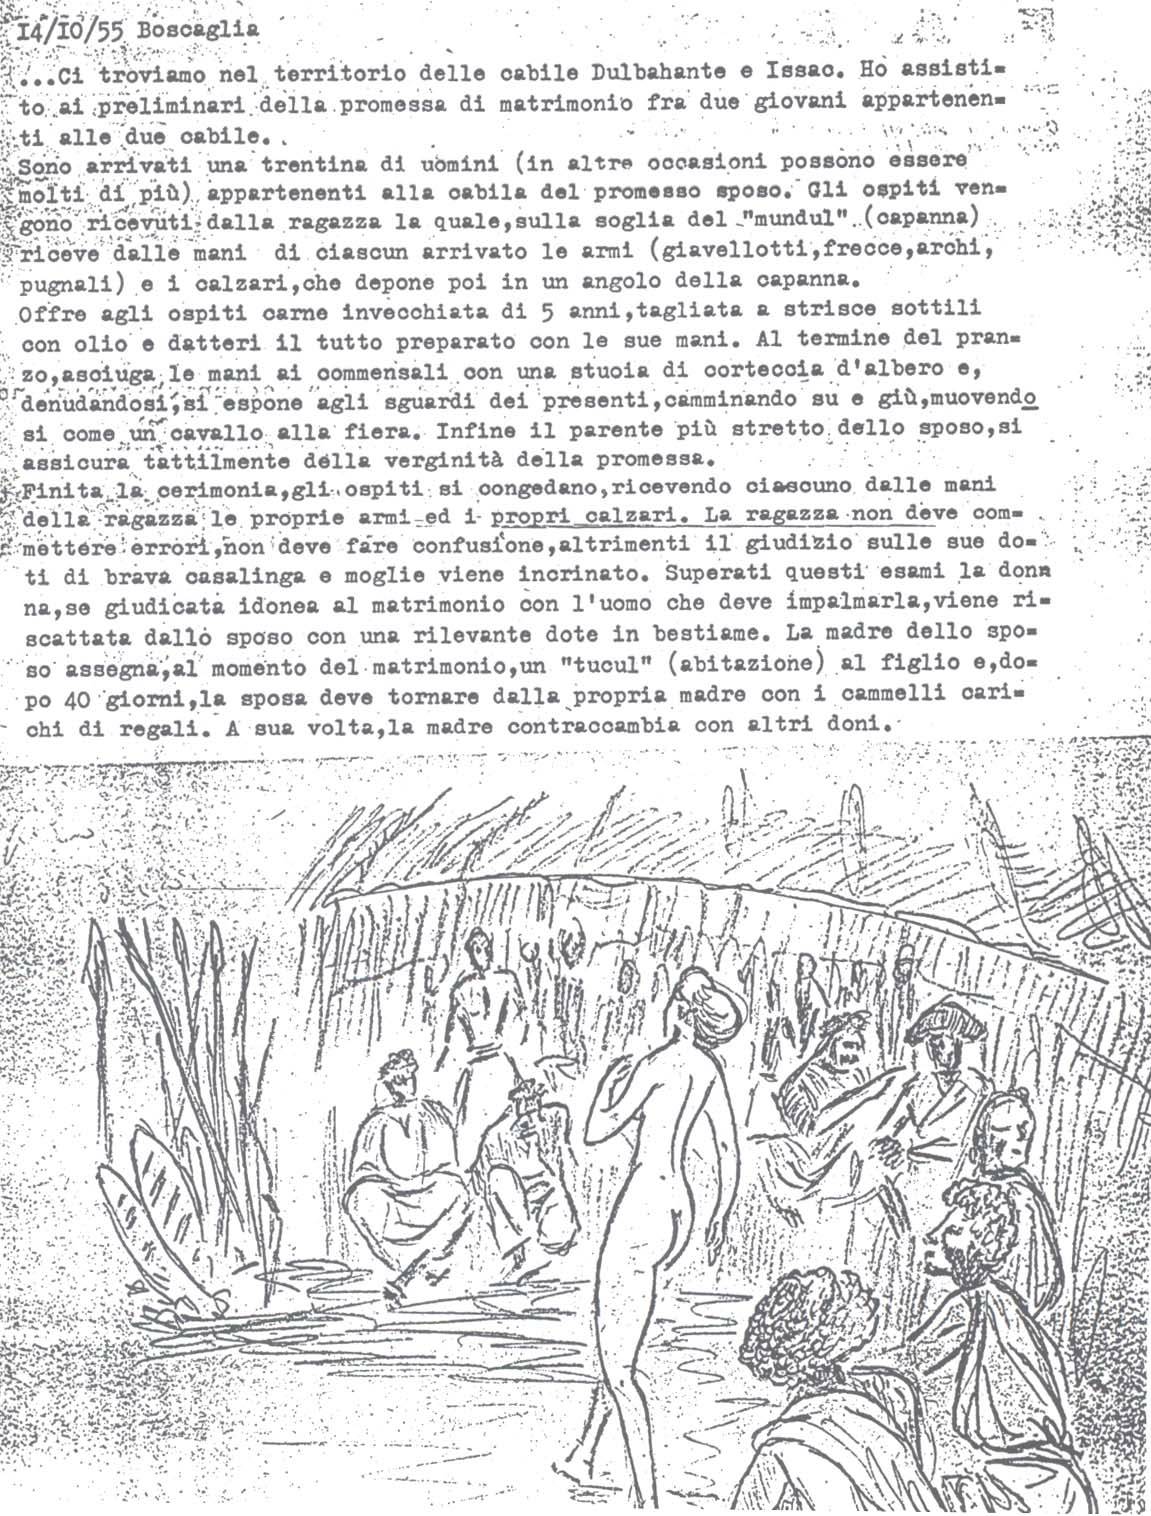 Diario Sabbetta addentrato nelle usanze somale racconta una promessa di matrimonio (7° Alias Mohamed nella boscaglia somala)